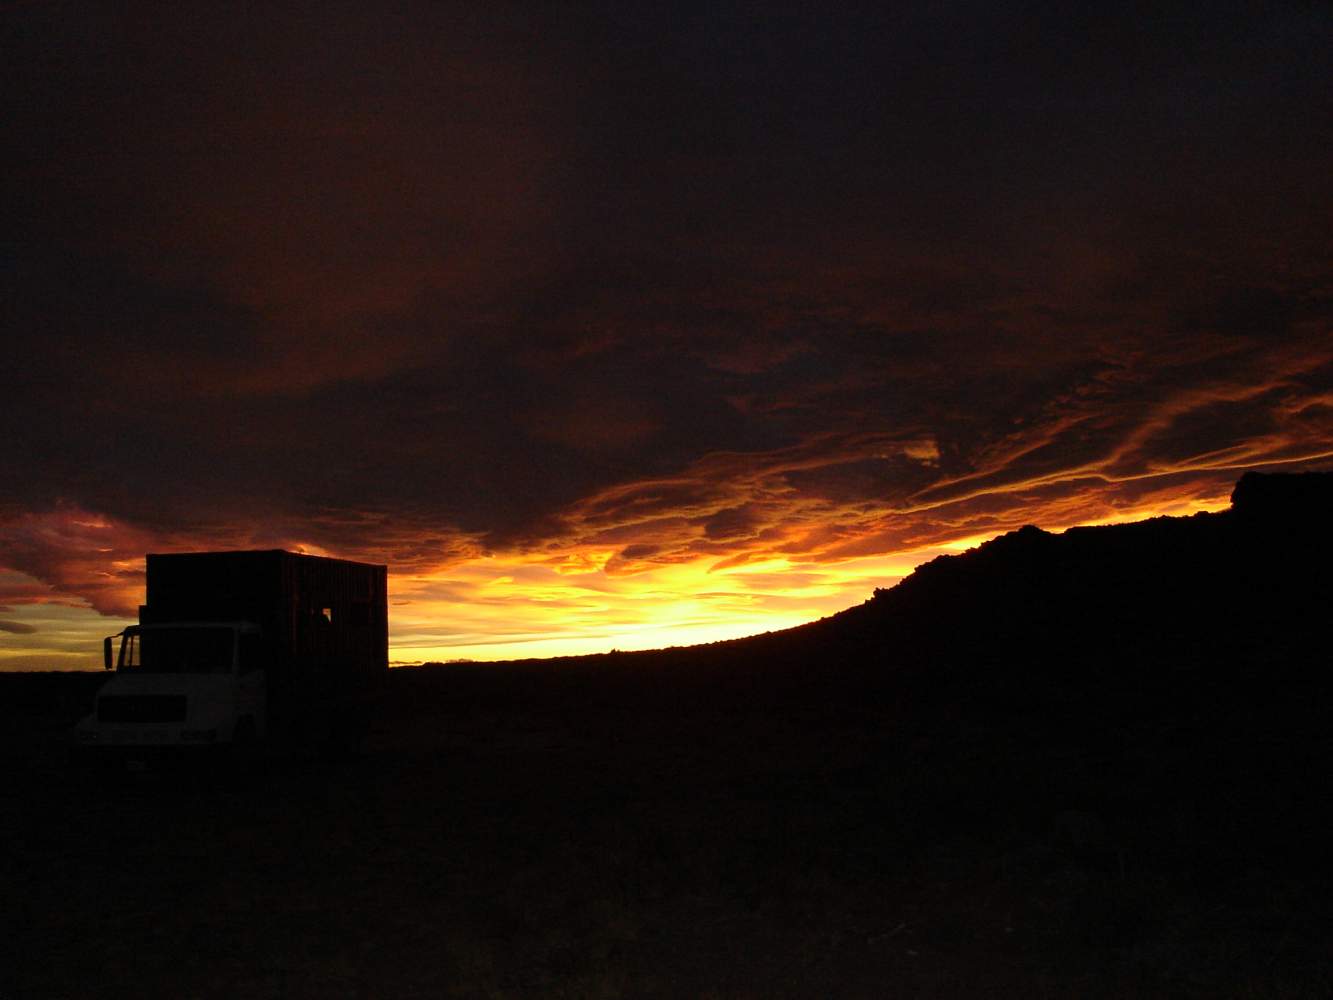 Sonnenuntergang im Reiseland Chile, aufgenommen auf einer Motorradreise